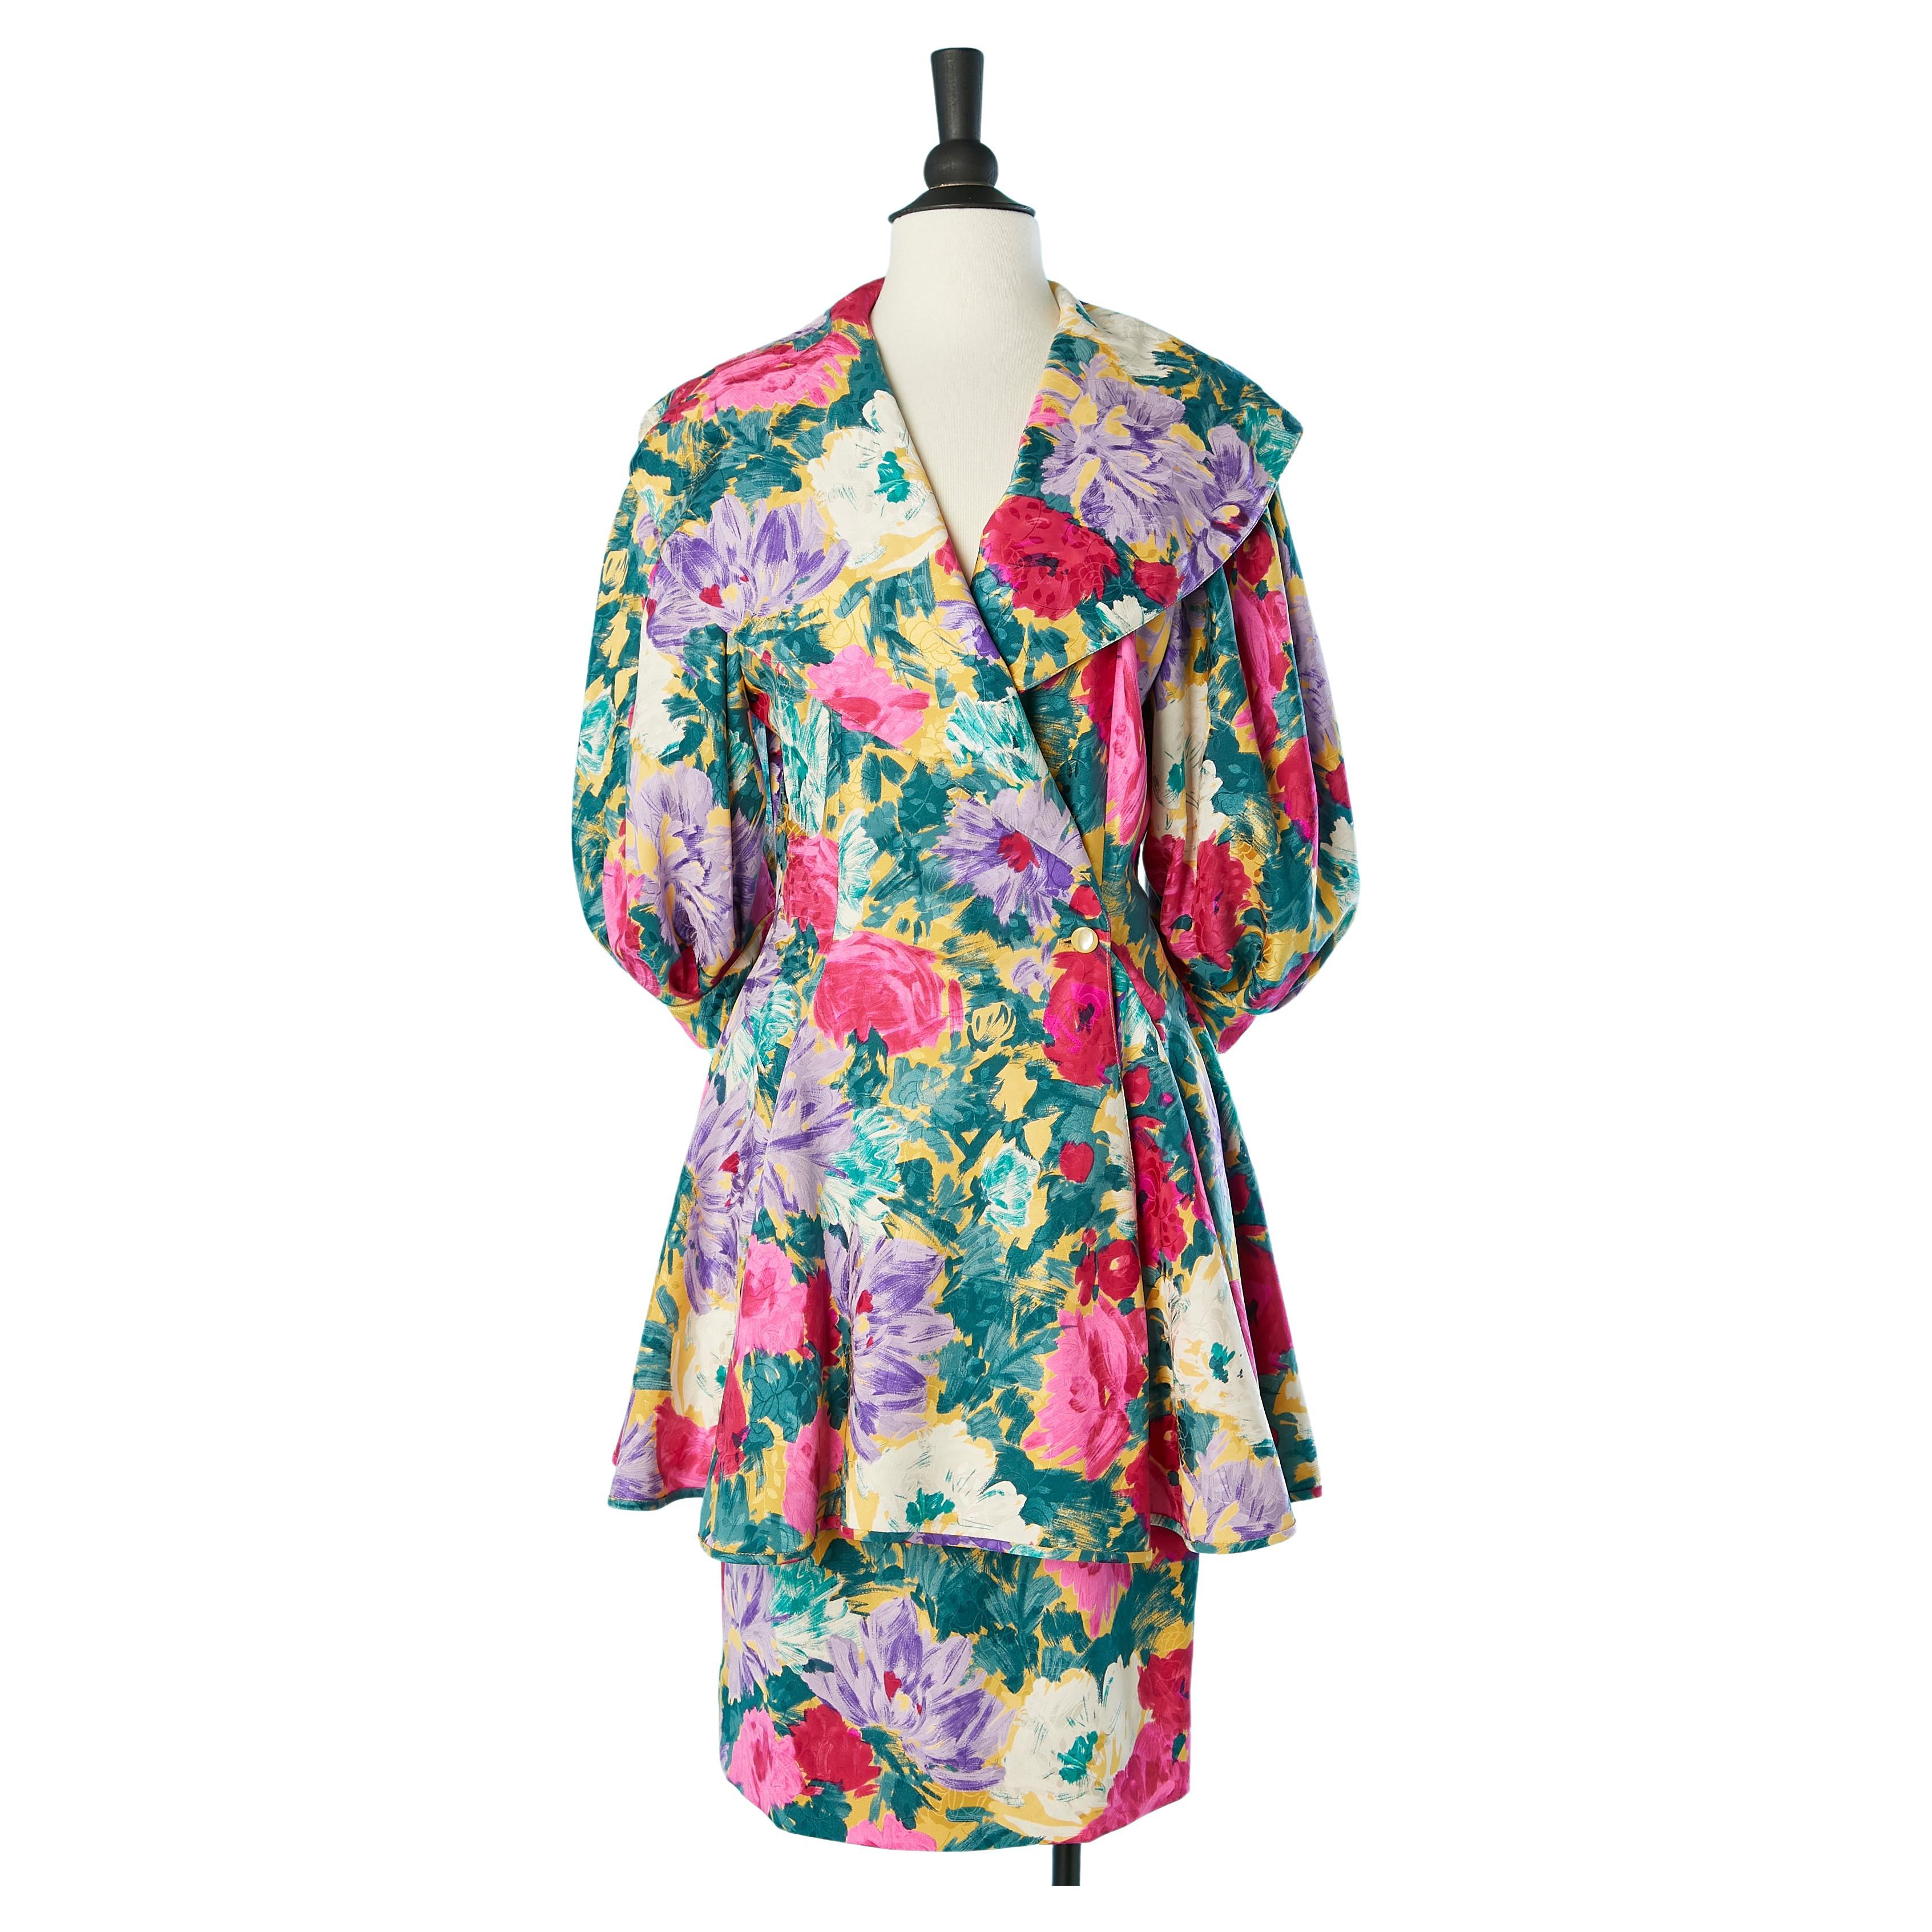 Silk jacquard with flower print skirt-suit ensemble Emanuel Ungaro Parallèle  For Sale